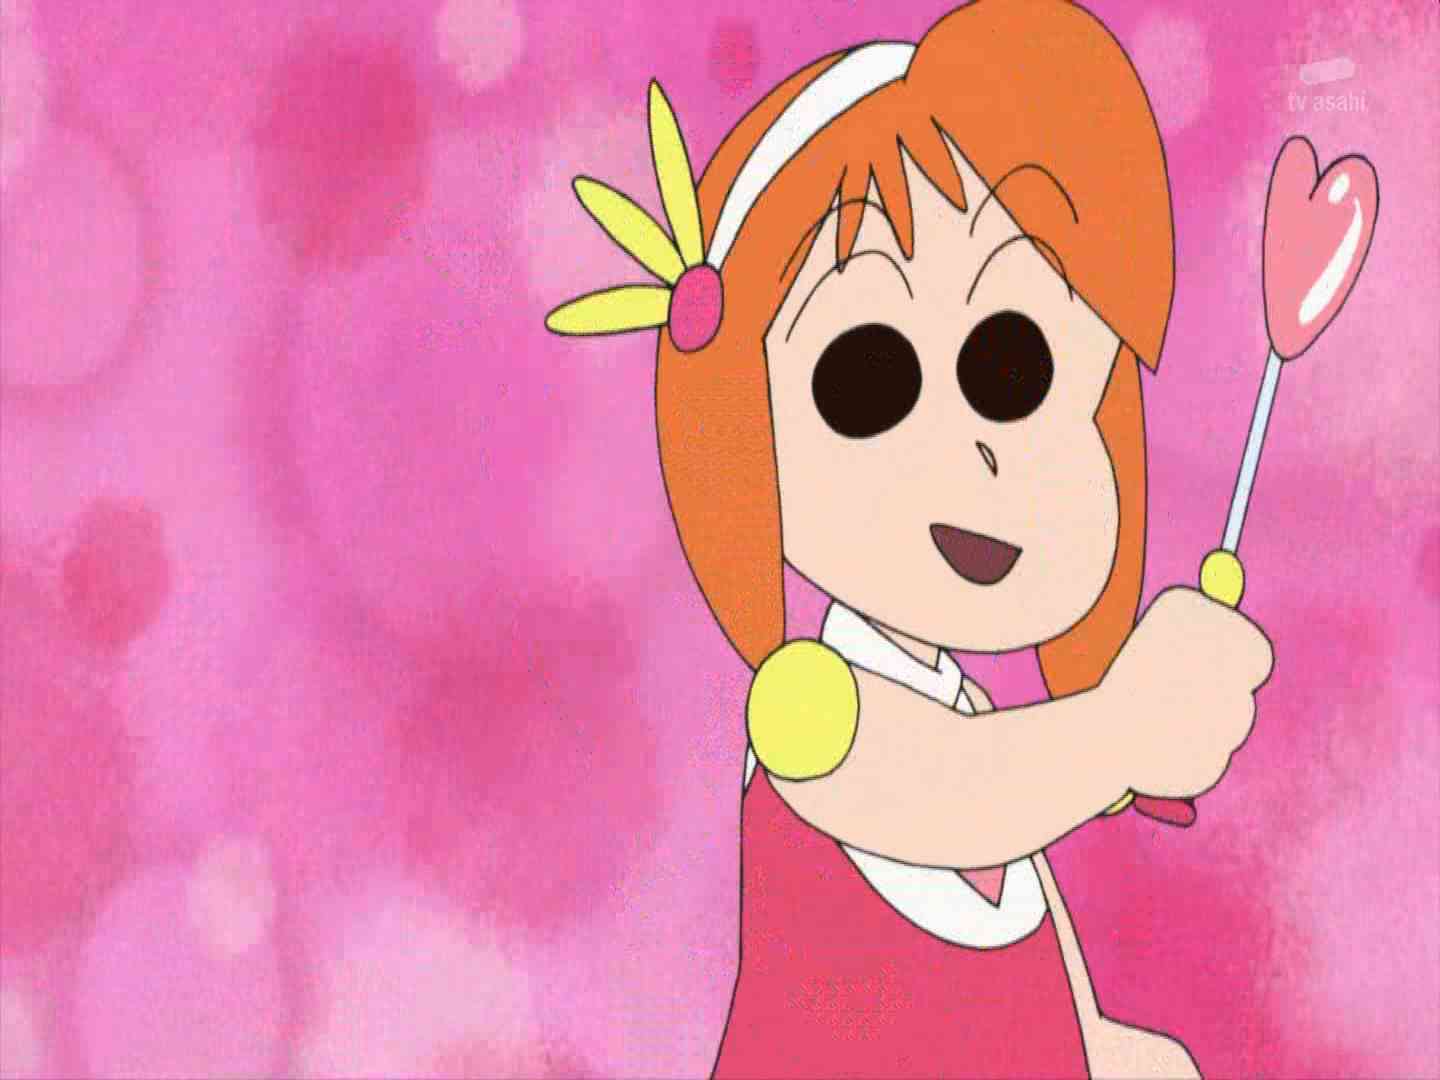 anime impression クレヨンしんちゃん 第946話 ずーっともえpファンだゾ ピンチを切り抜けるゾ